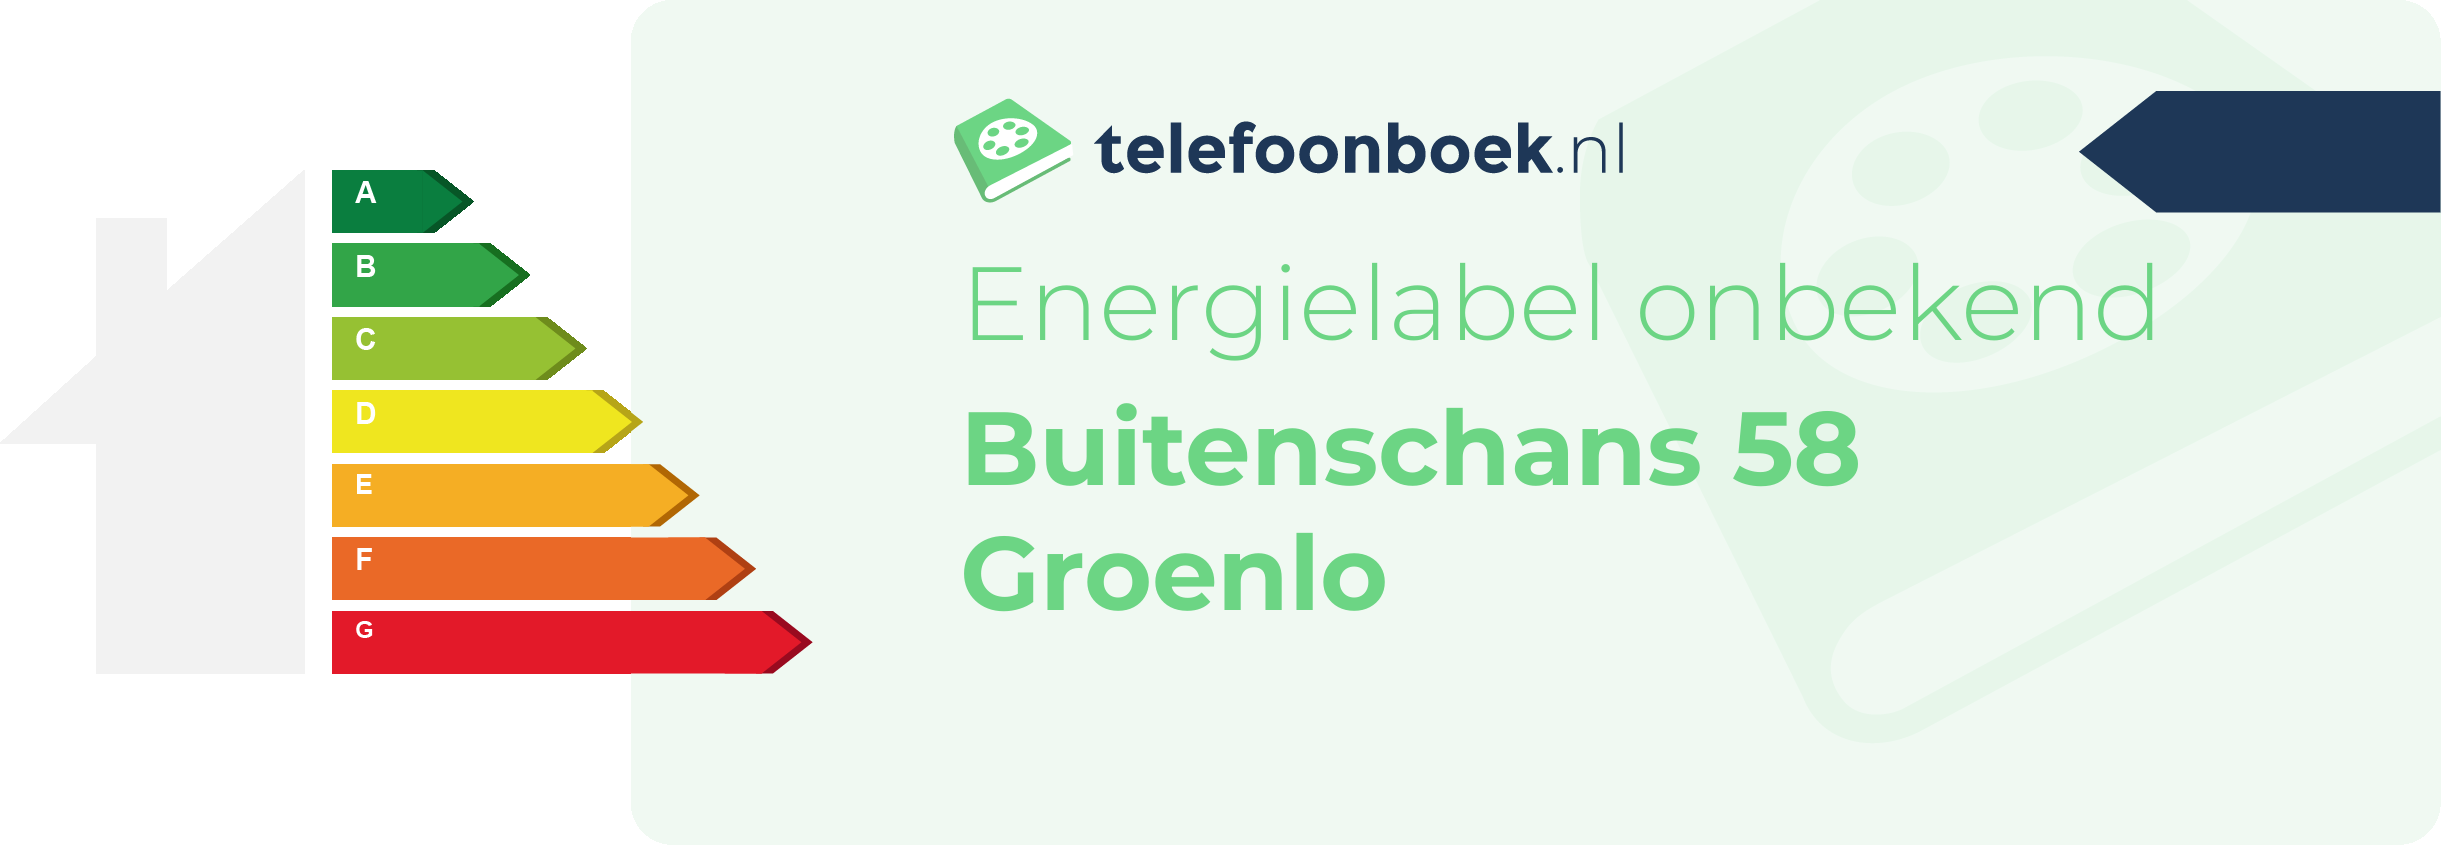 Energielabel Buitenschans 58 Groenlo